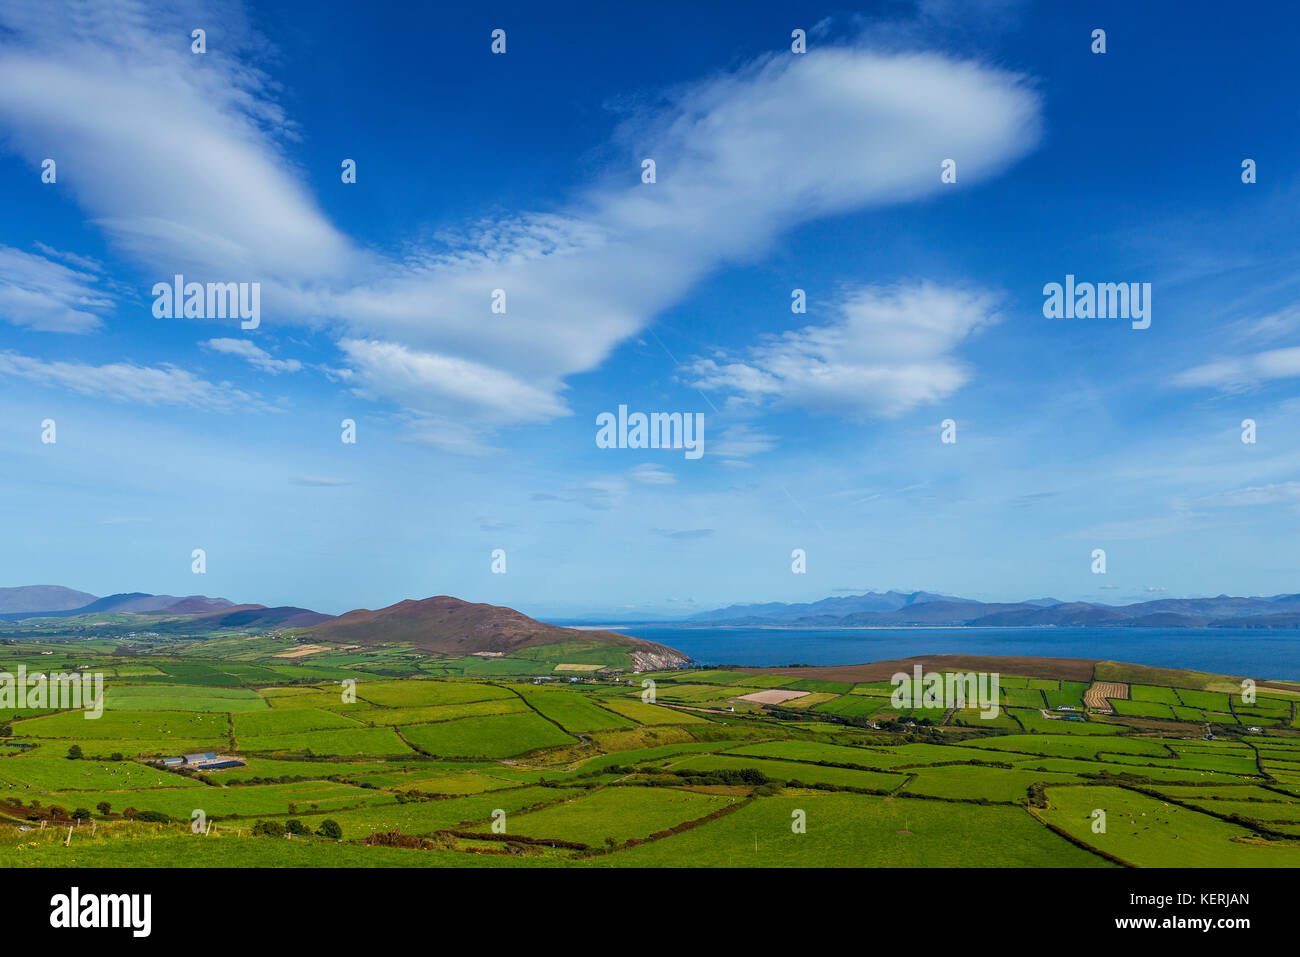 Kleine grüne Felder in einem irischen Landschaft, in der Nähe der Kopf des Stieres, der Halbinsel Dingle in der Grafschaft Kerry, Irland Stockfoto